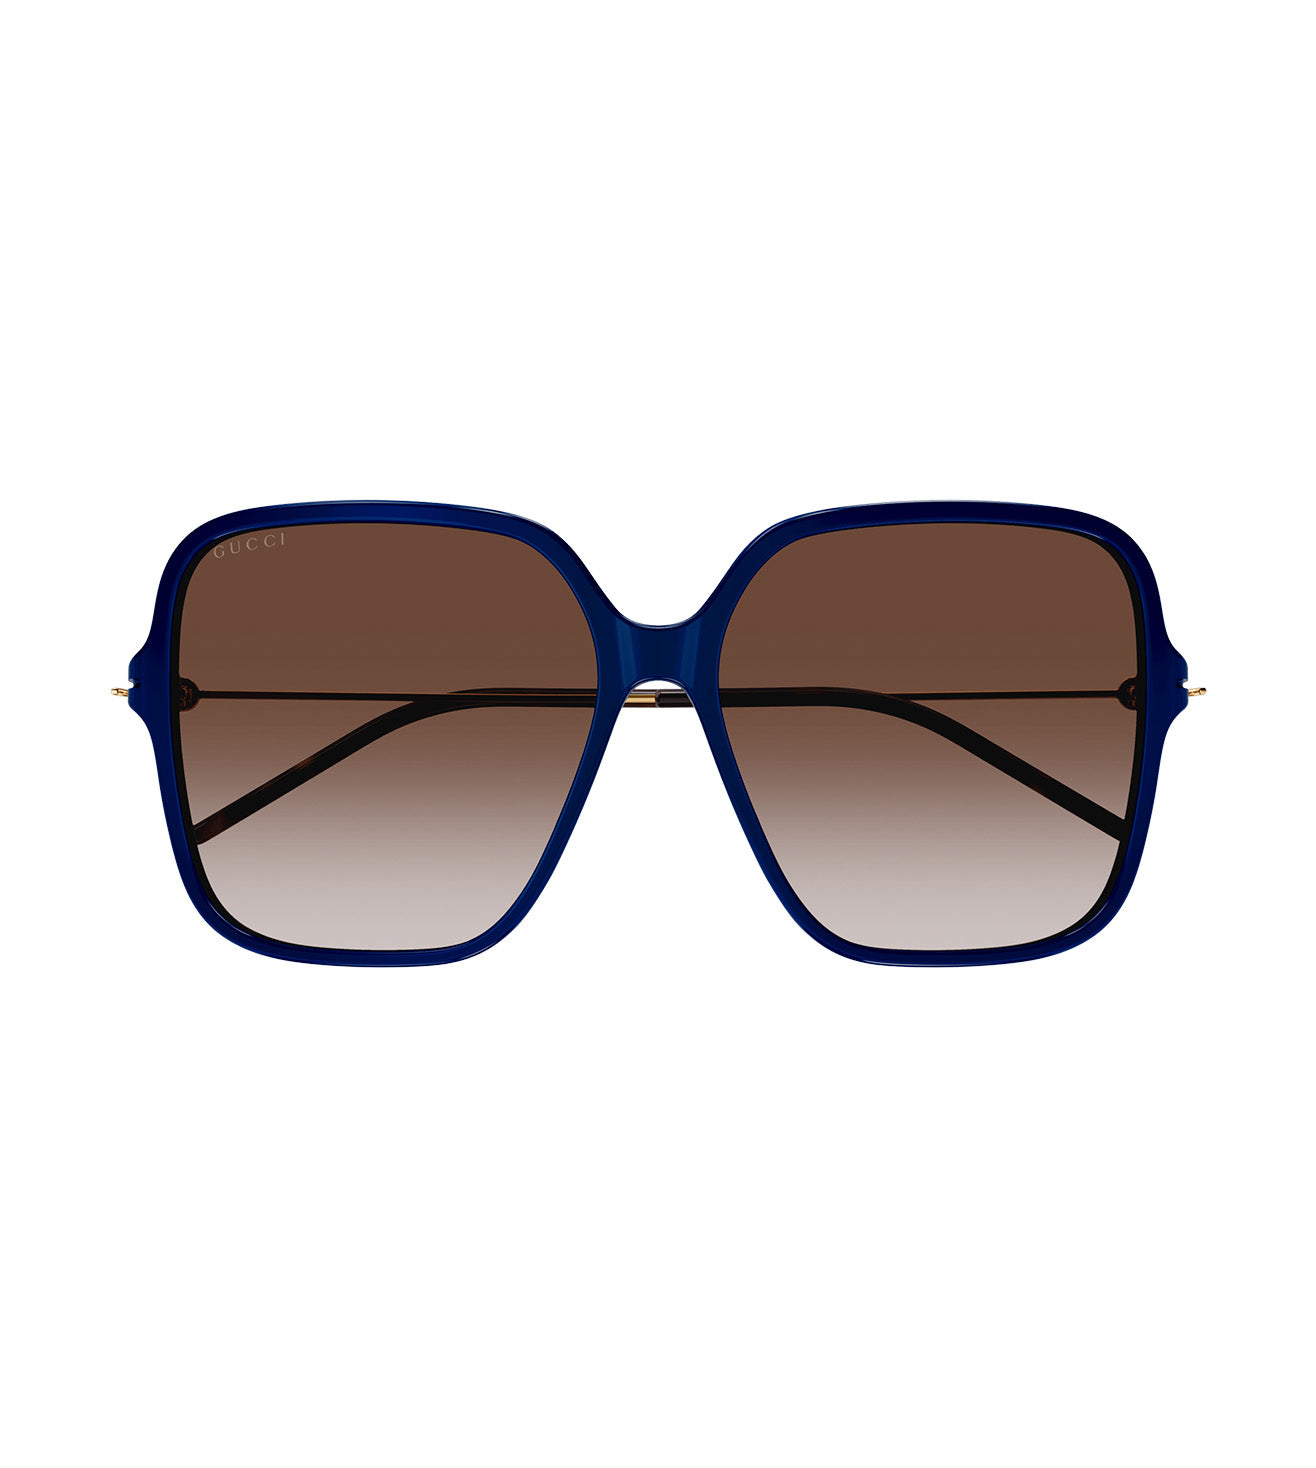 Gucci Women's Red Square Sunglasses